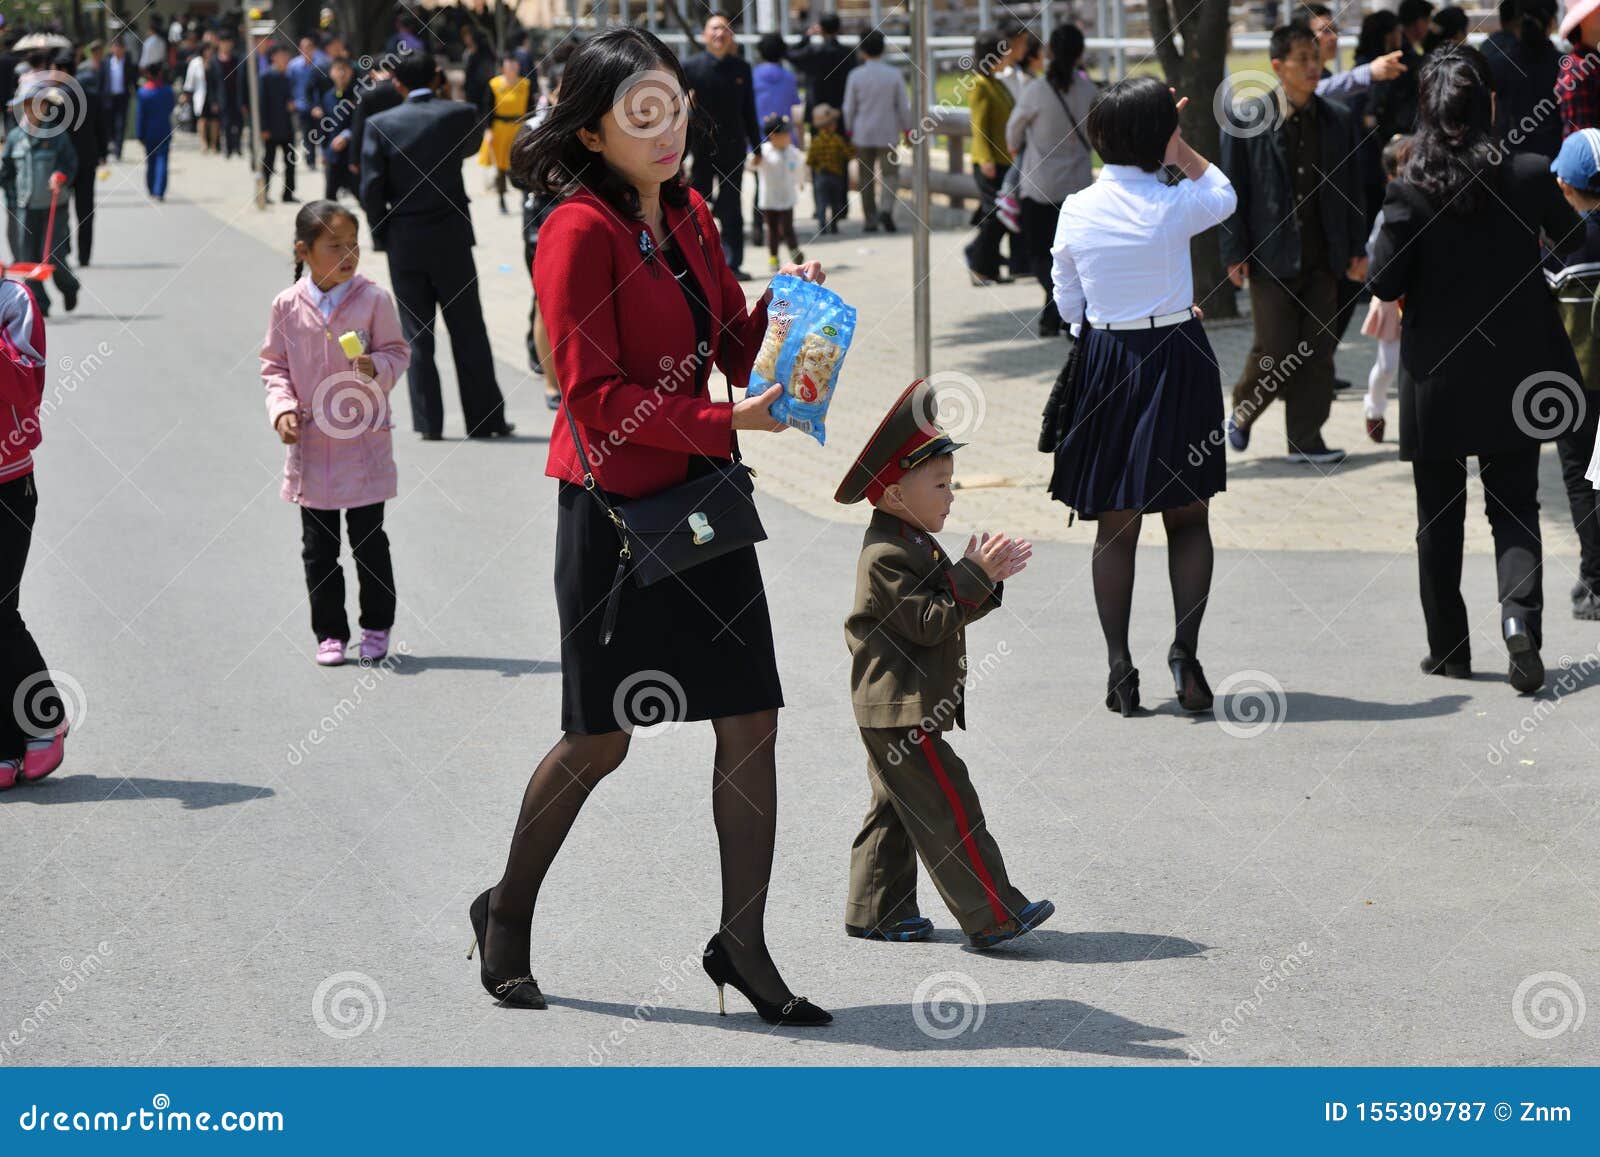 North korea people